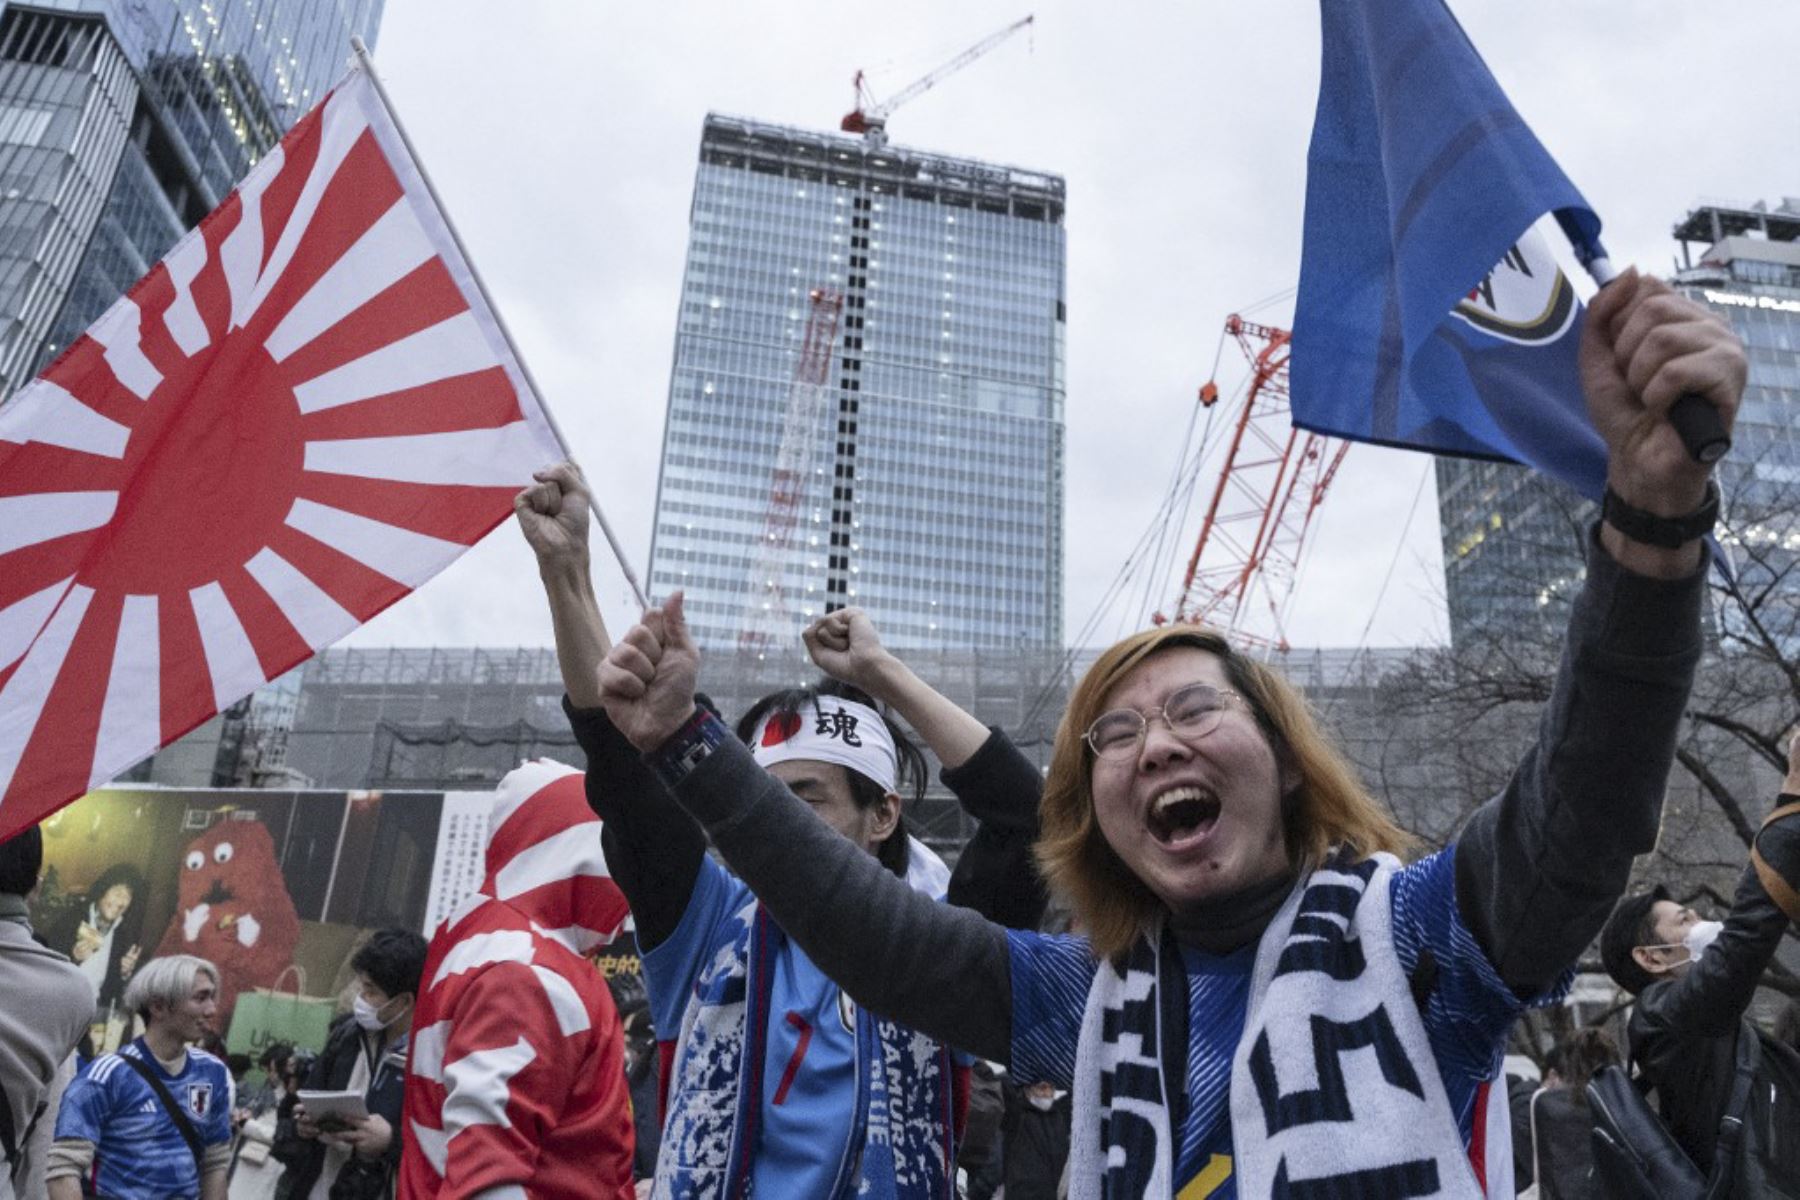 Los fanáticos celebran después de la victoria de Japón sobre España en el partido de fútbol del Grupo E de la Copa Mundial de Catar 2022 para avanzar a los octavos de final, en el área de Shibuya Crossing en Tokio

Foto: AFP